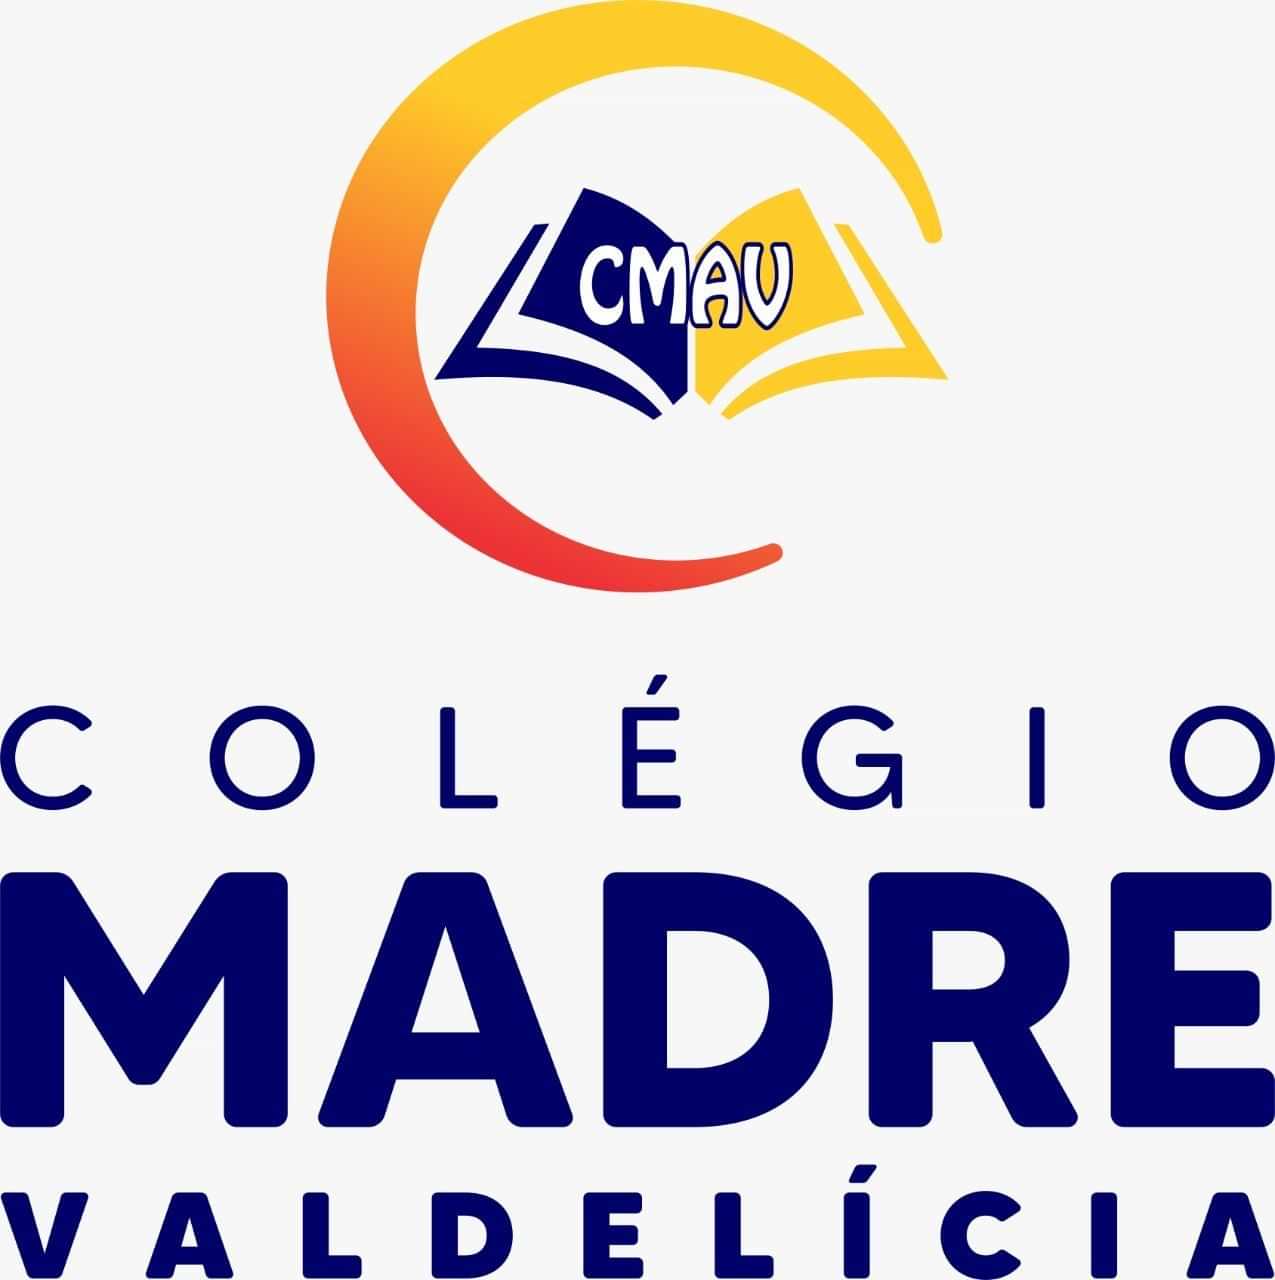  Centro Educacional Madre Valdelicia 